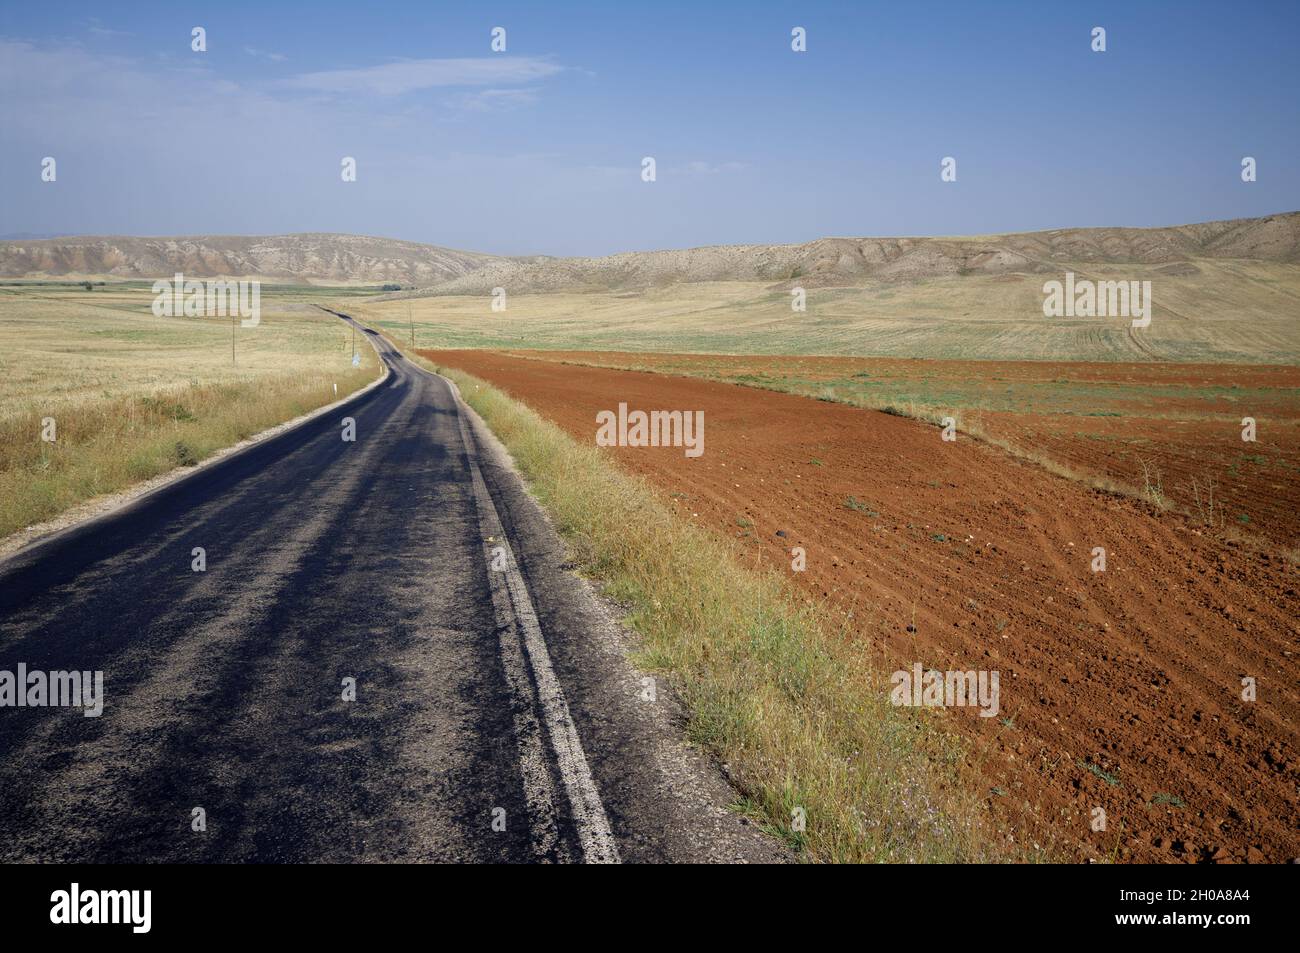 Landschaft der zentralanatolischen Region in der Türkei Straße kreuzt Steppe mit gepflügten Feld und Grasland Stockfoto